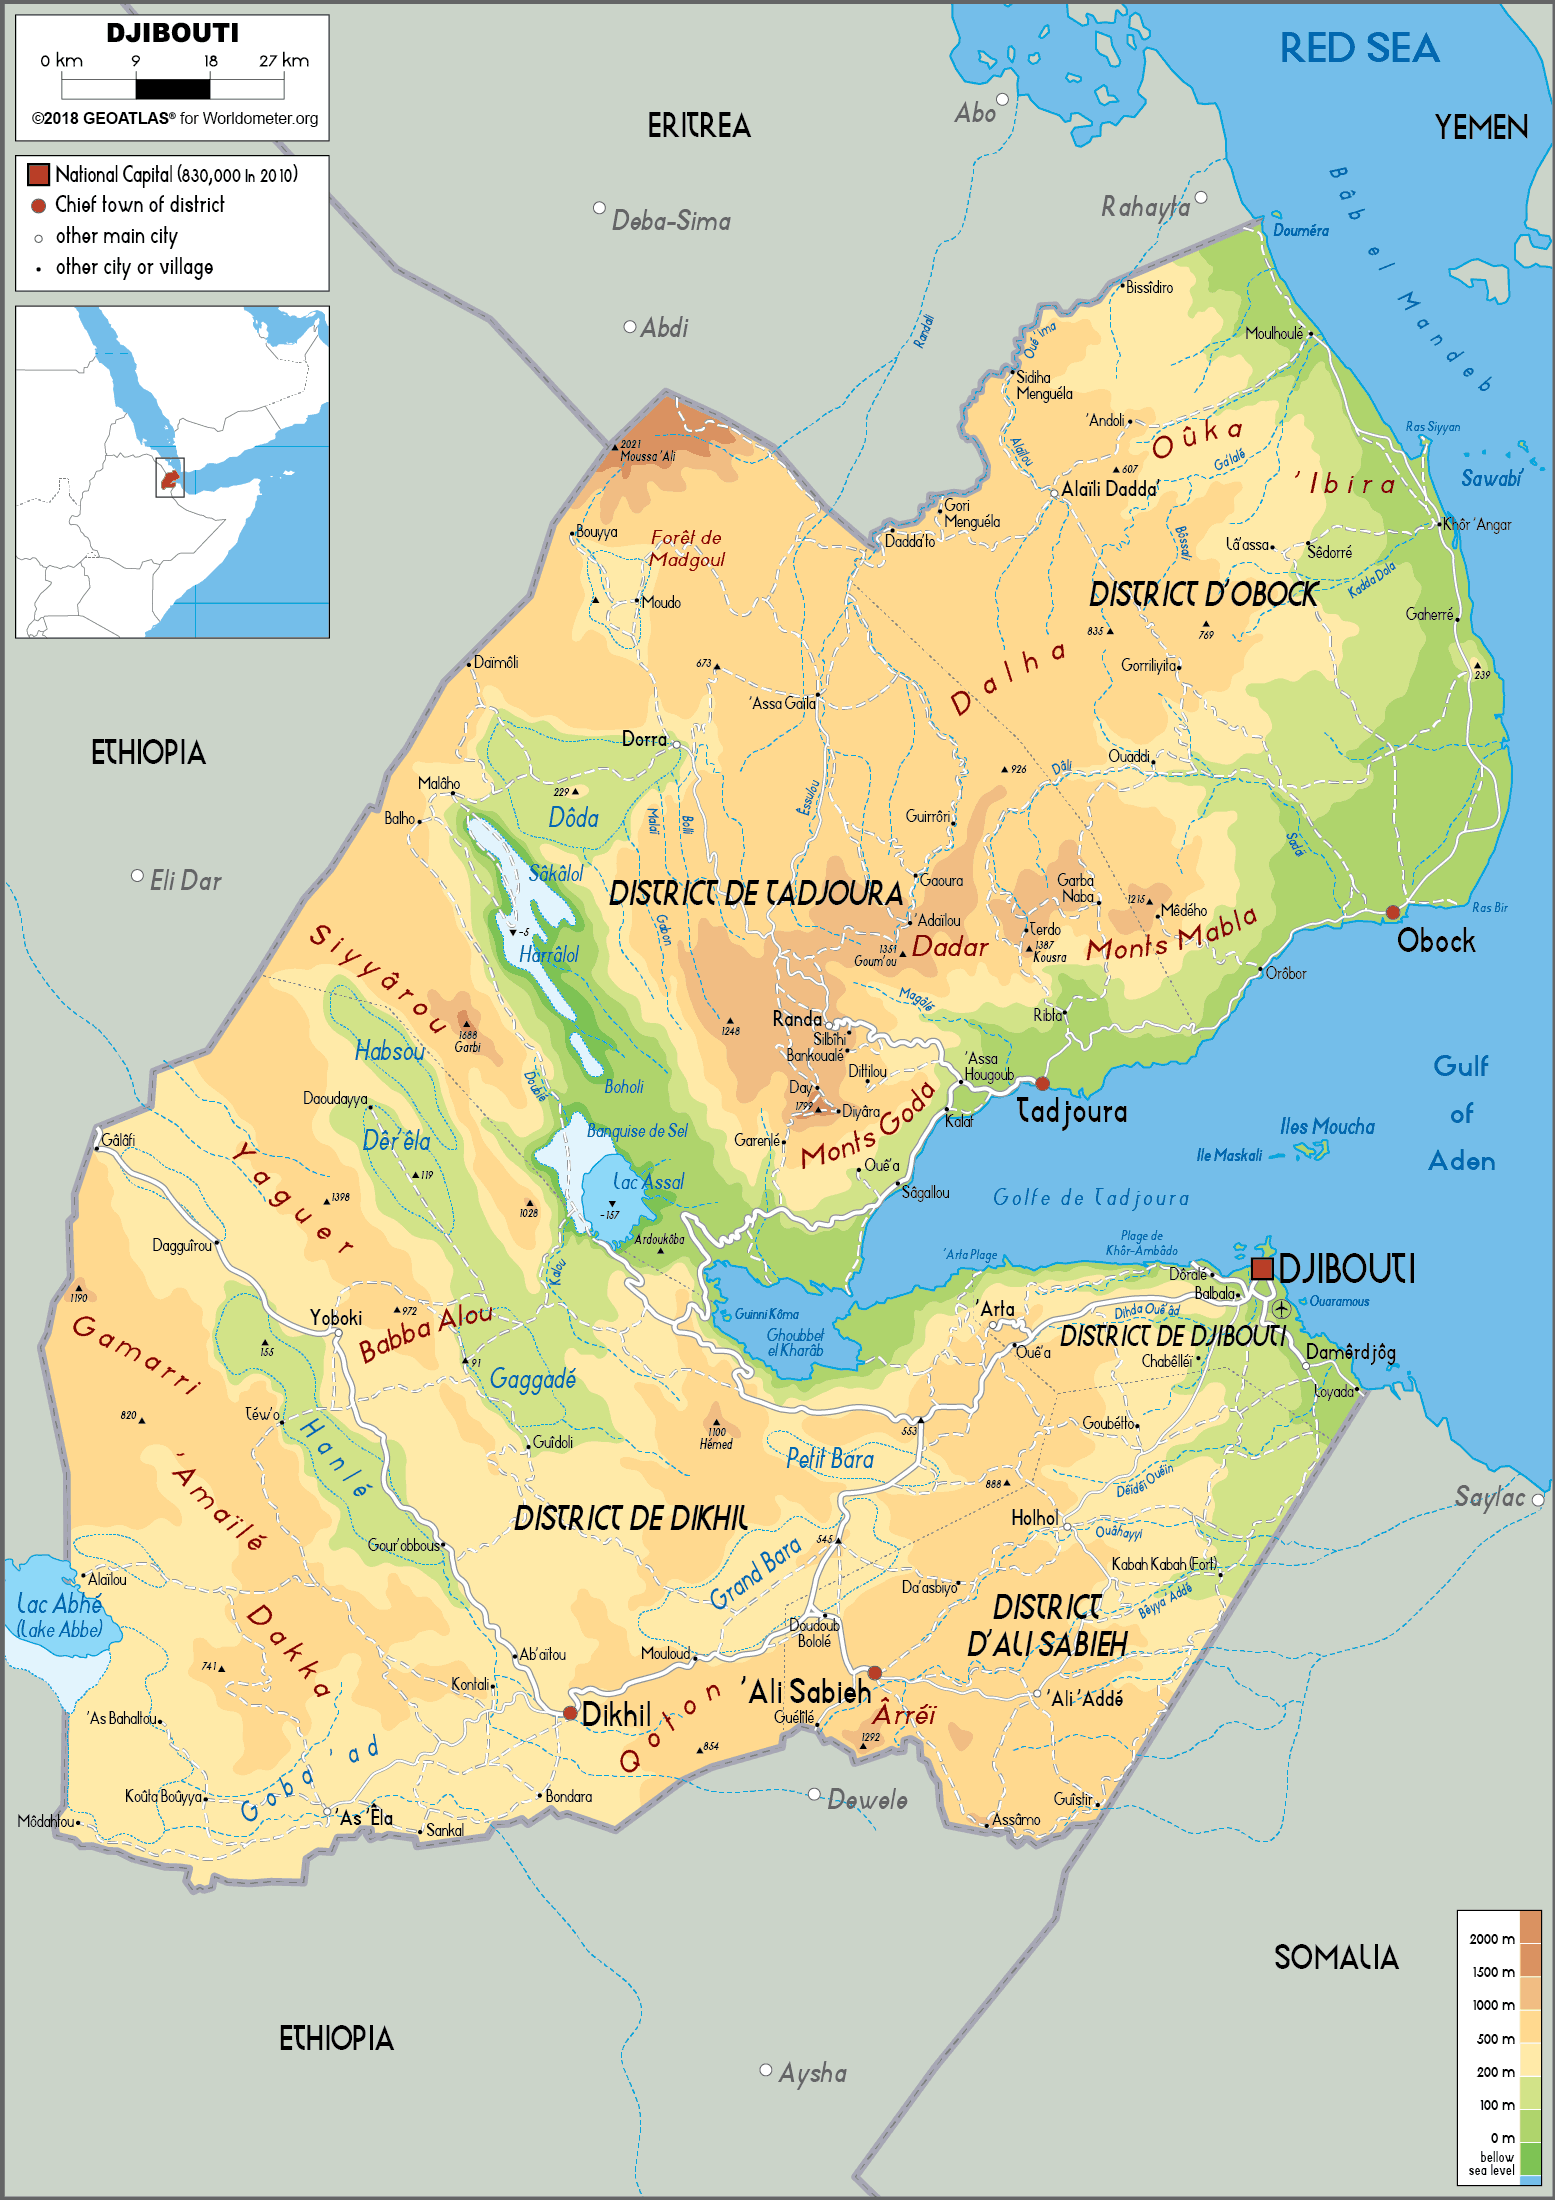 djibouti on a map Djibouti Map Physical Worldometer djibouti on a map